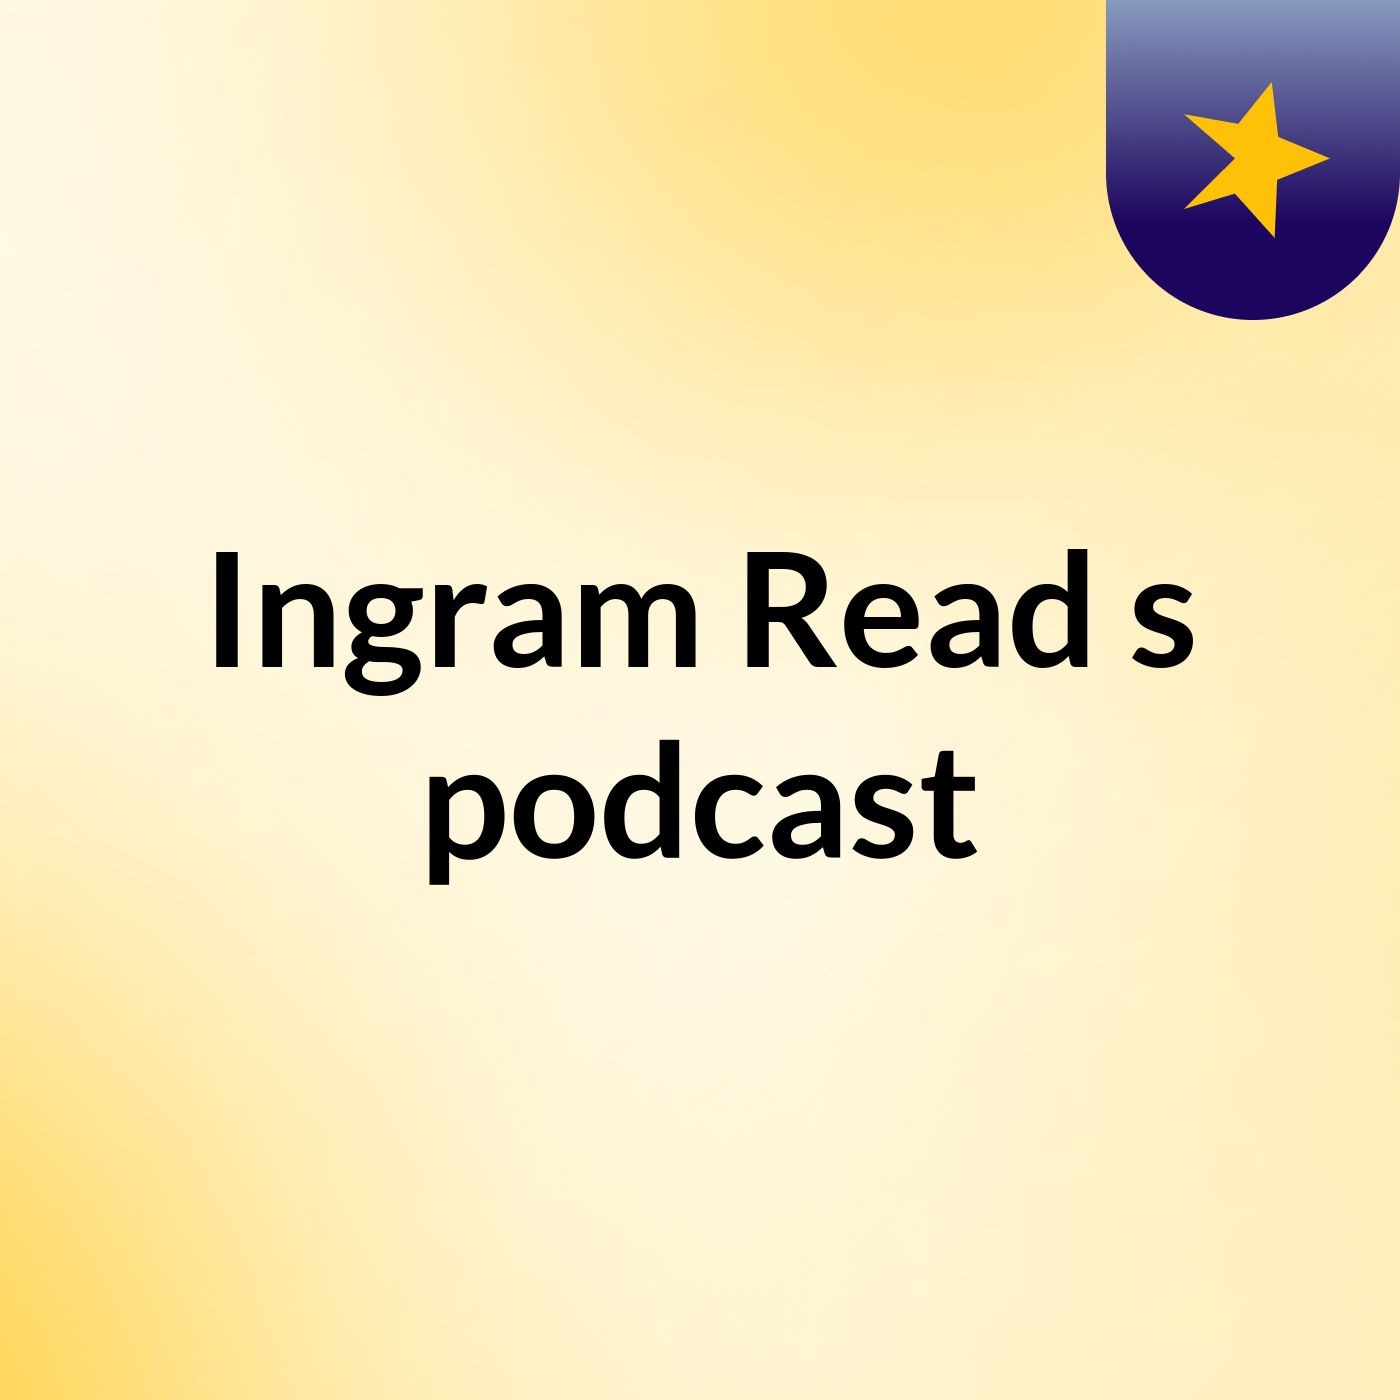 Ingram Read's podcast